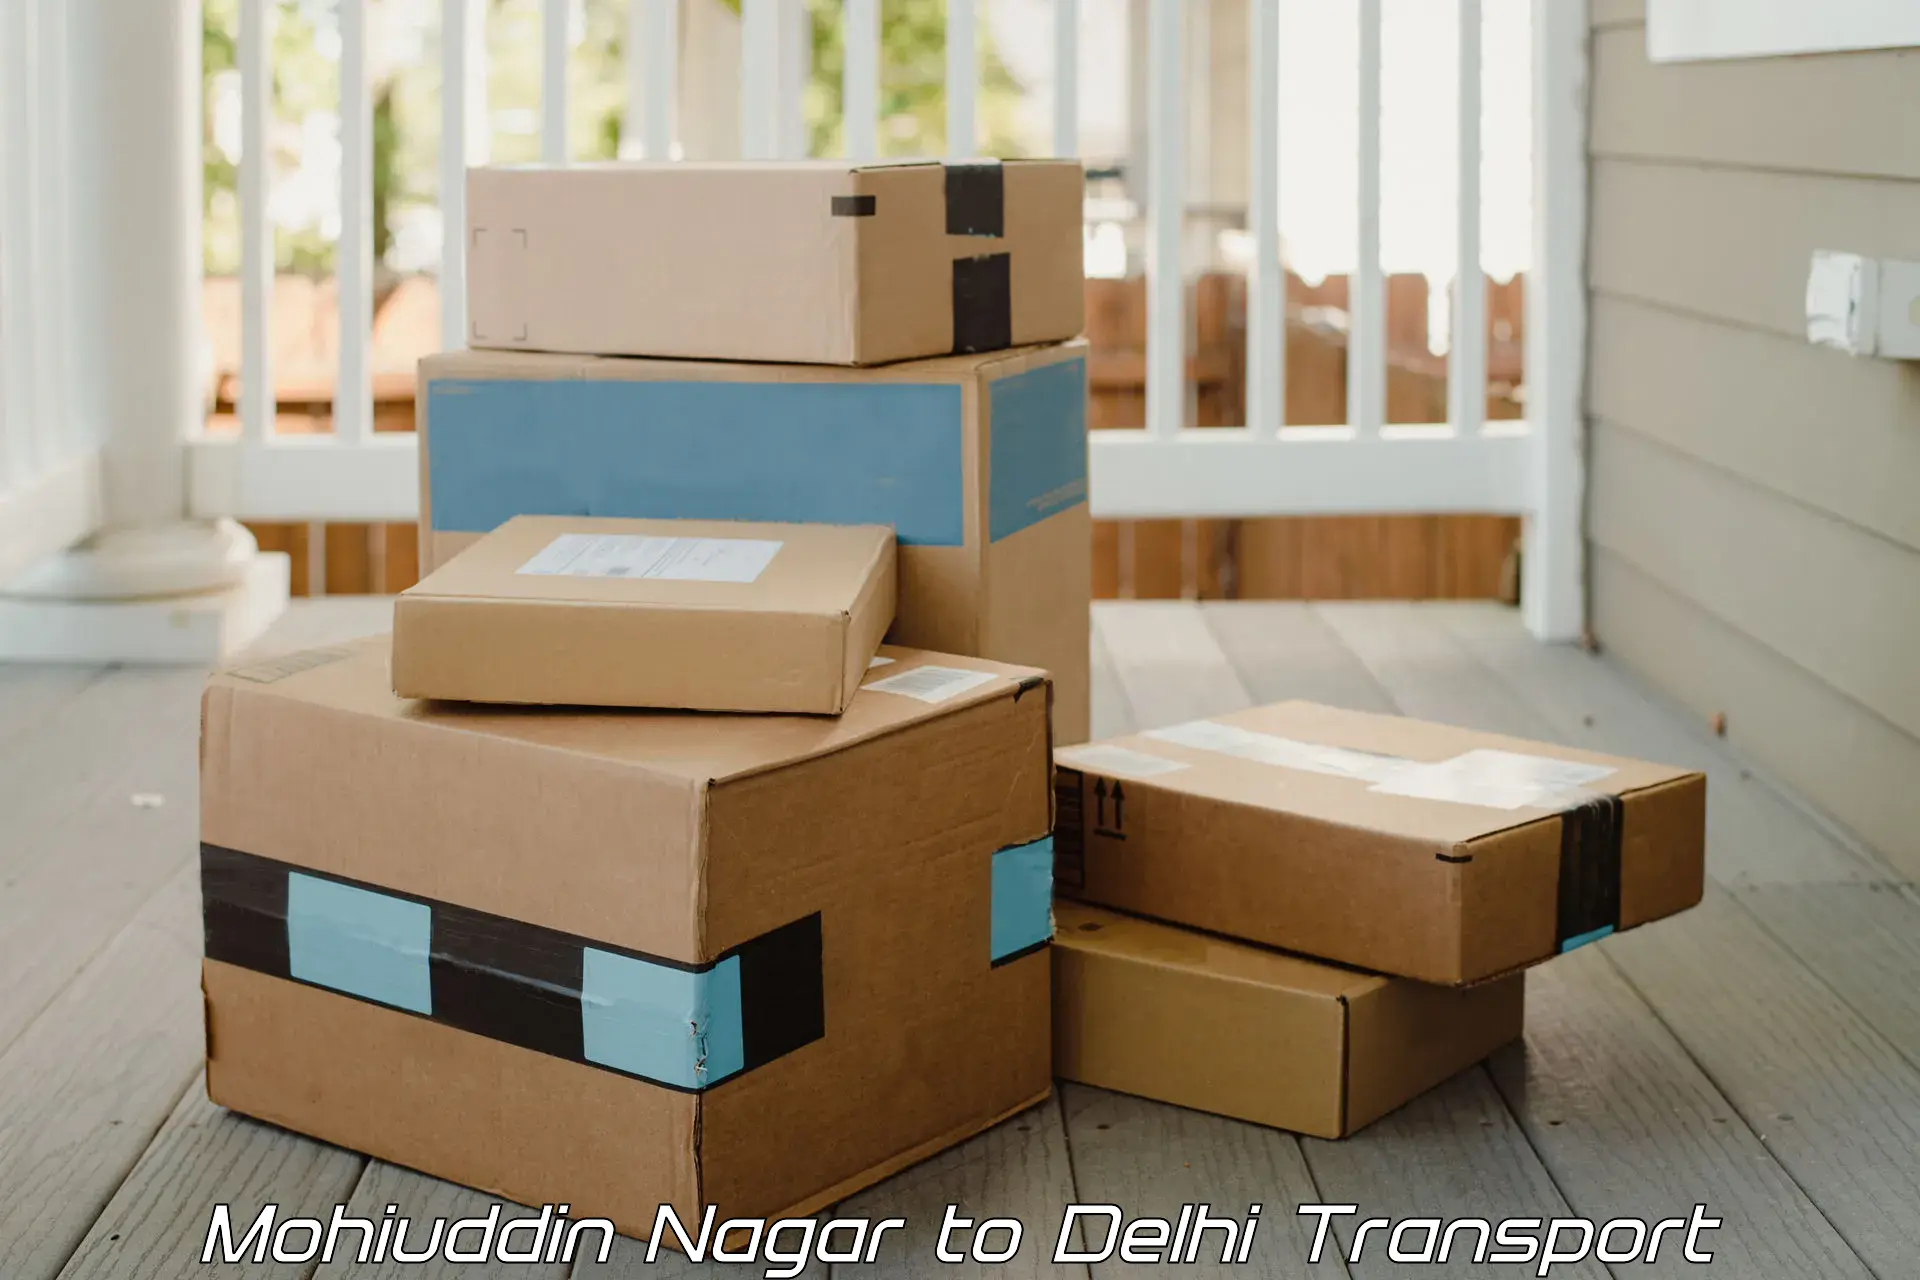 Air cargo transport services Mohiuddin Nagar to Ashok Vihar